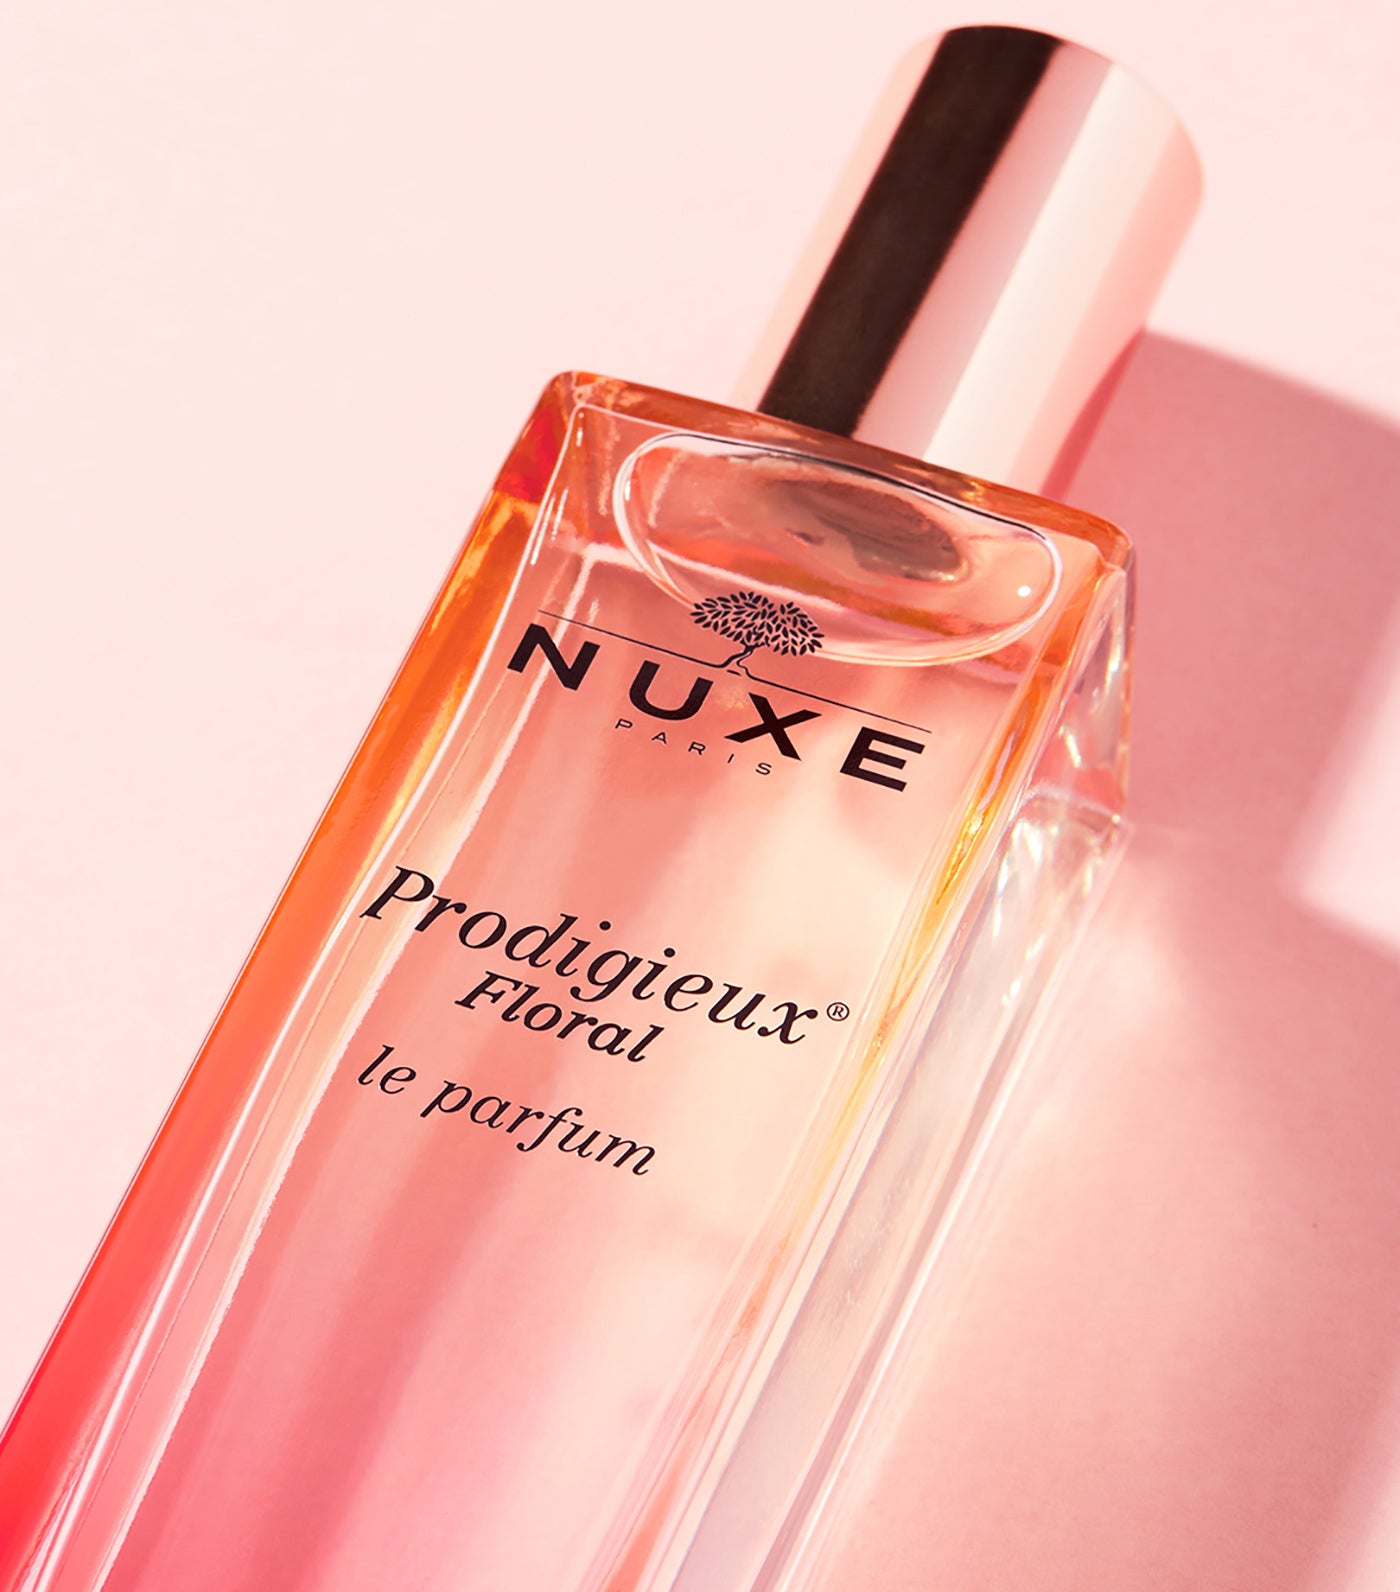 Nuxe Prodigieux® Floral le parfum